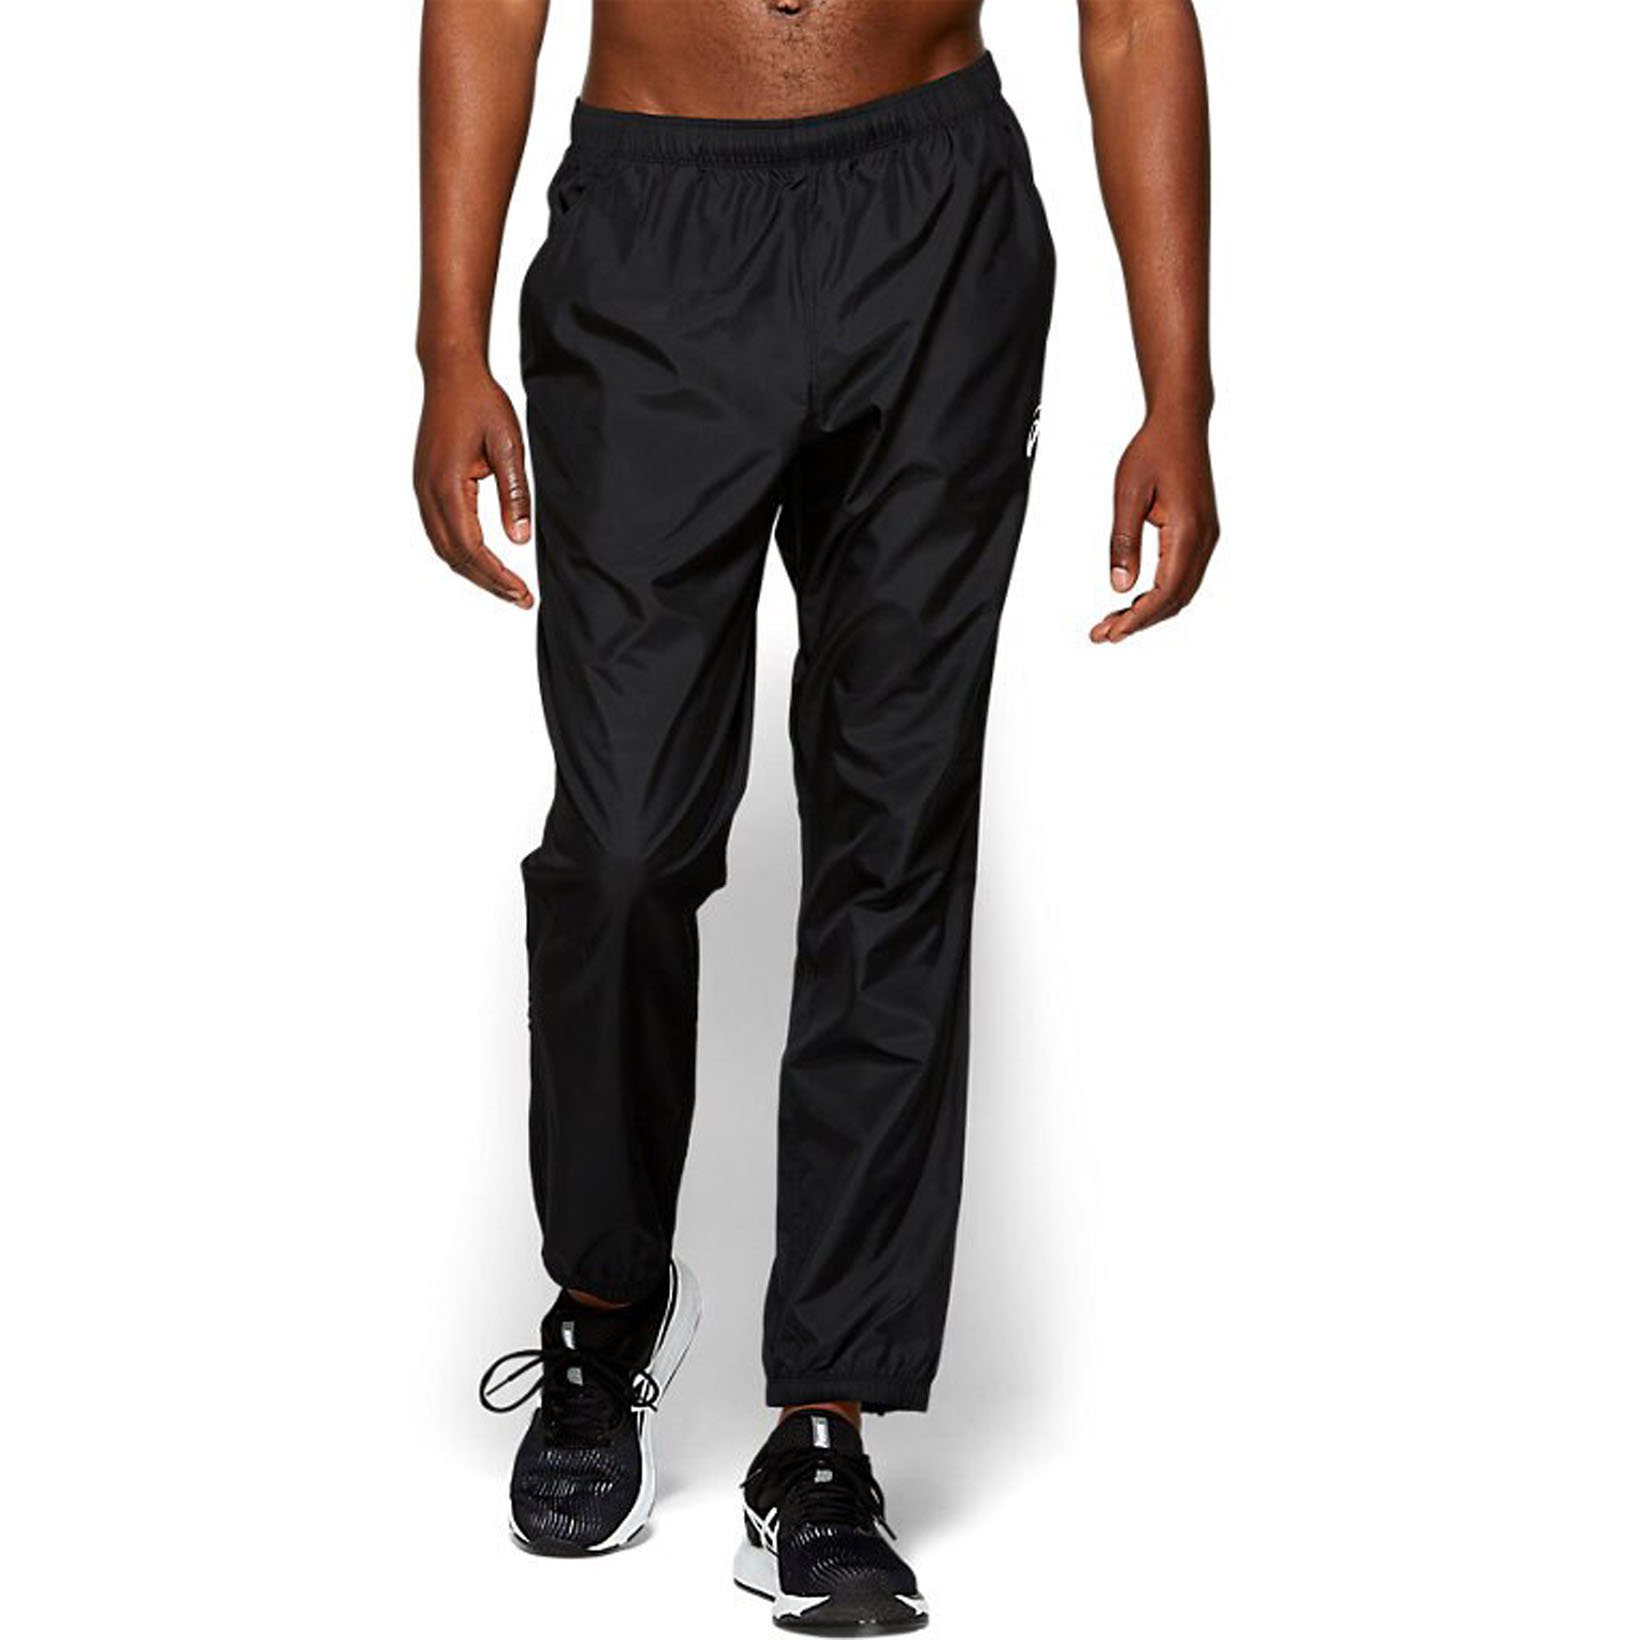 фото Спортивные брюки мужские asics silver woven черные 50-52 ru